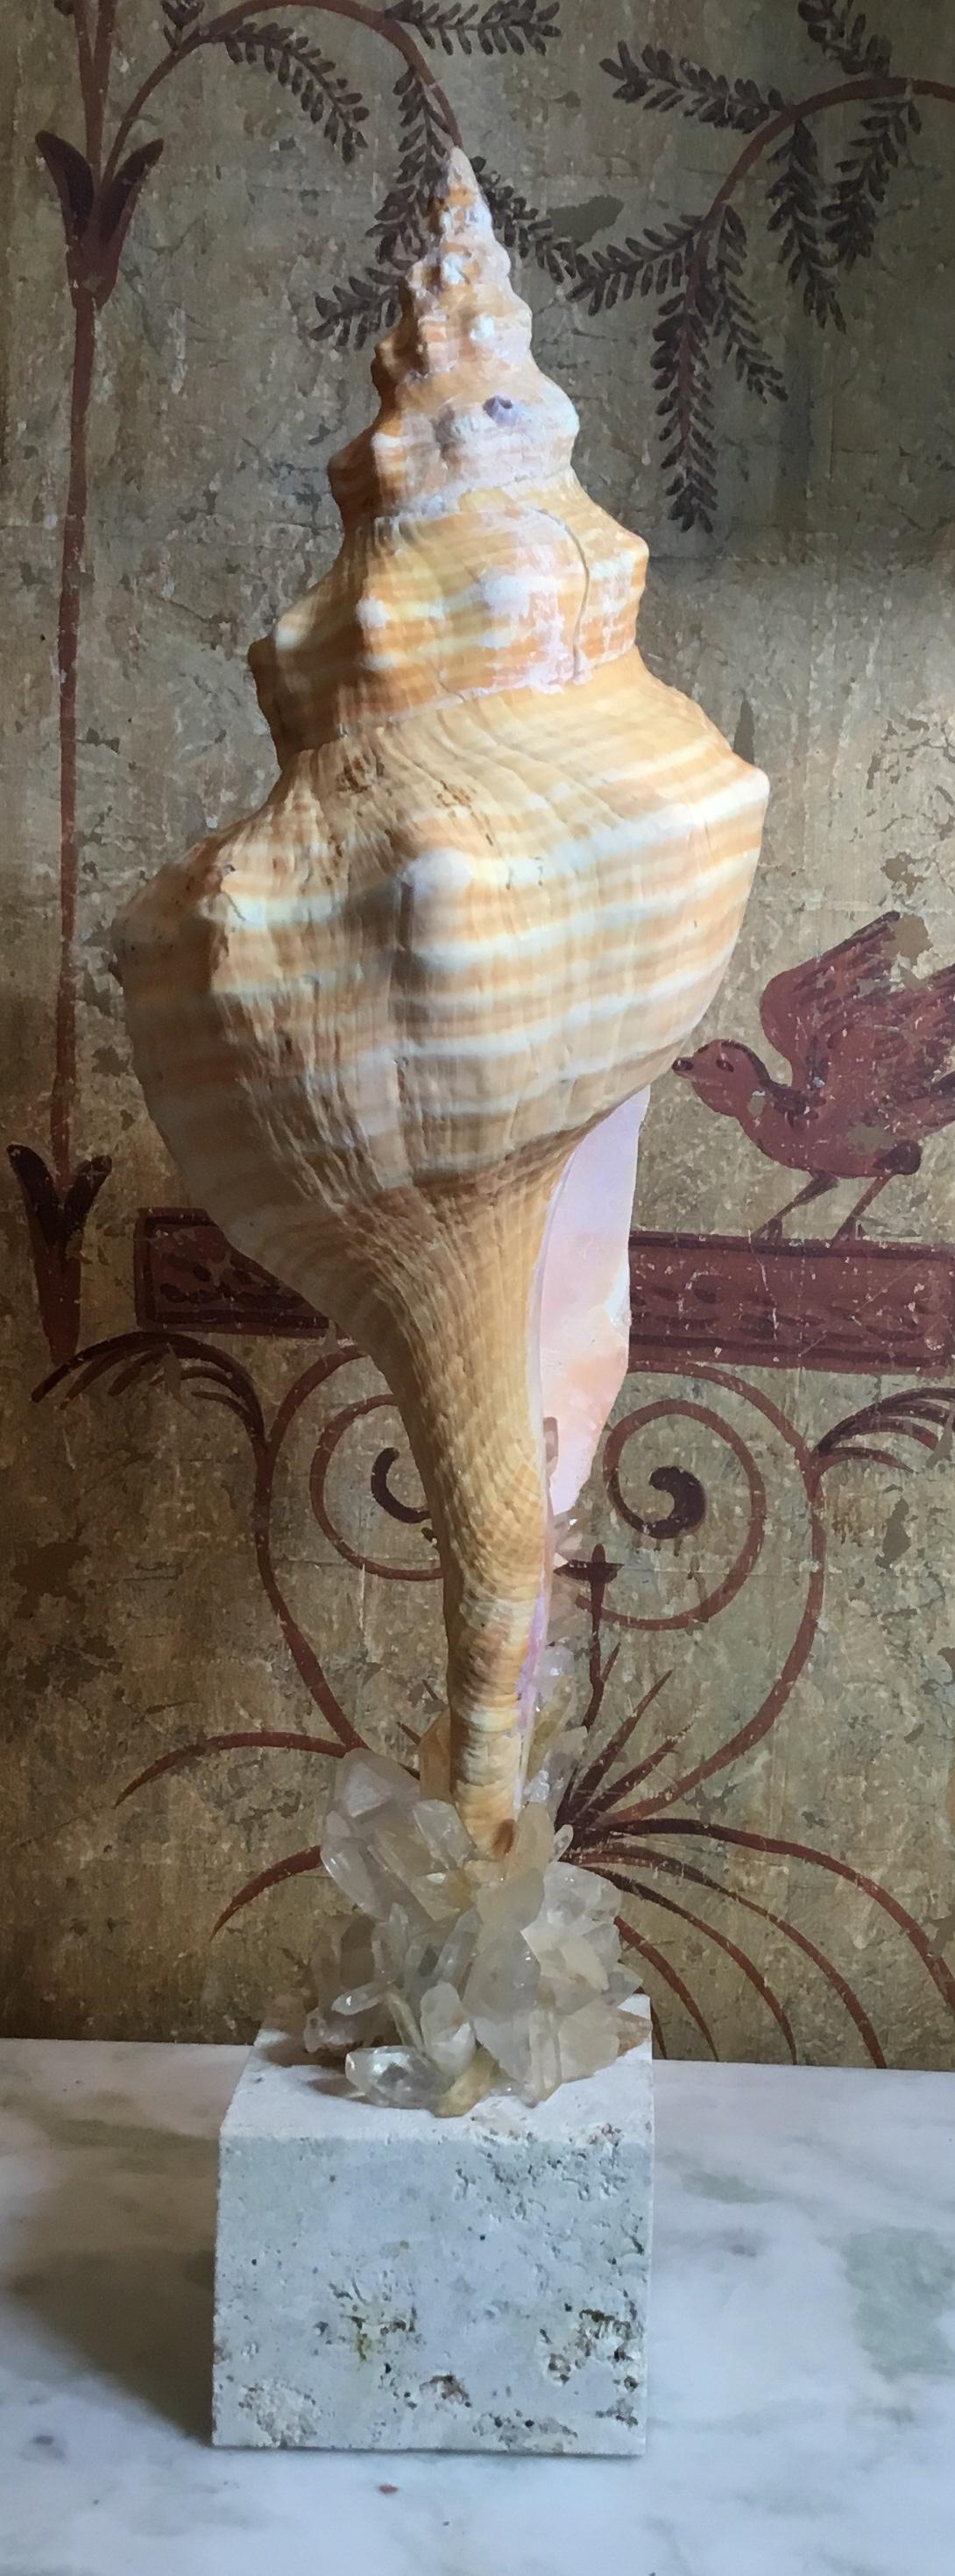 kind of sea shell